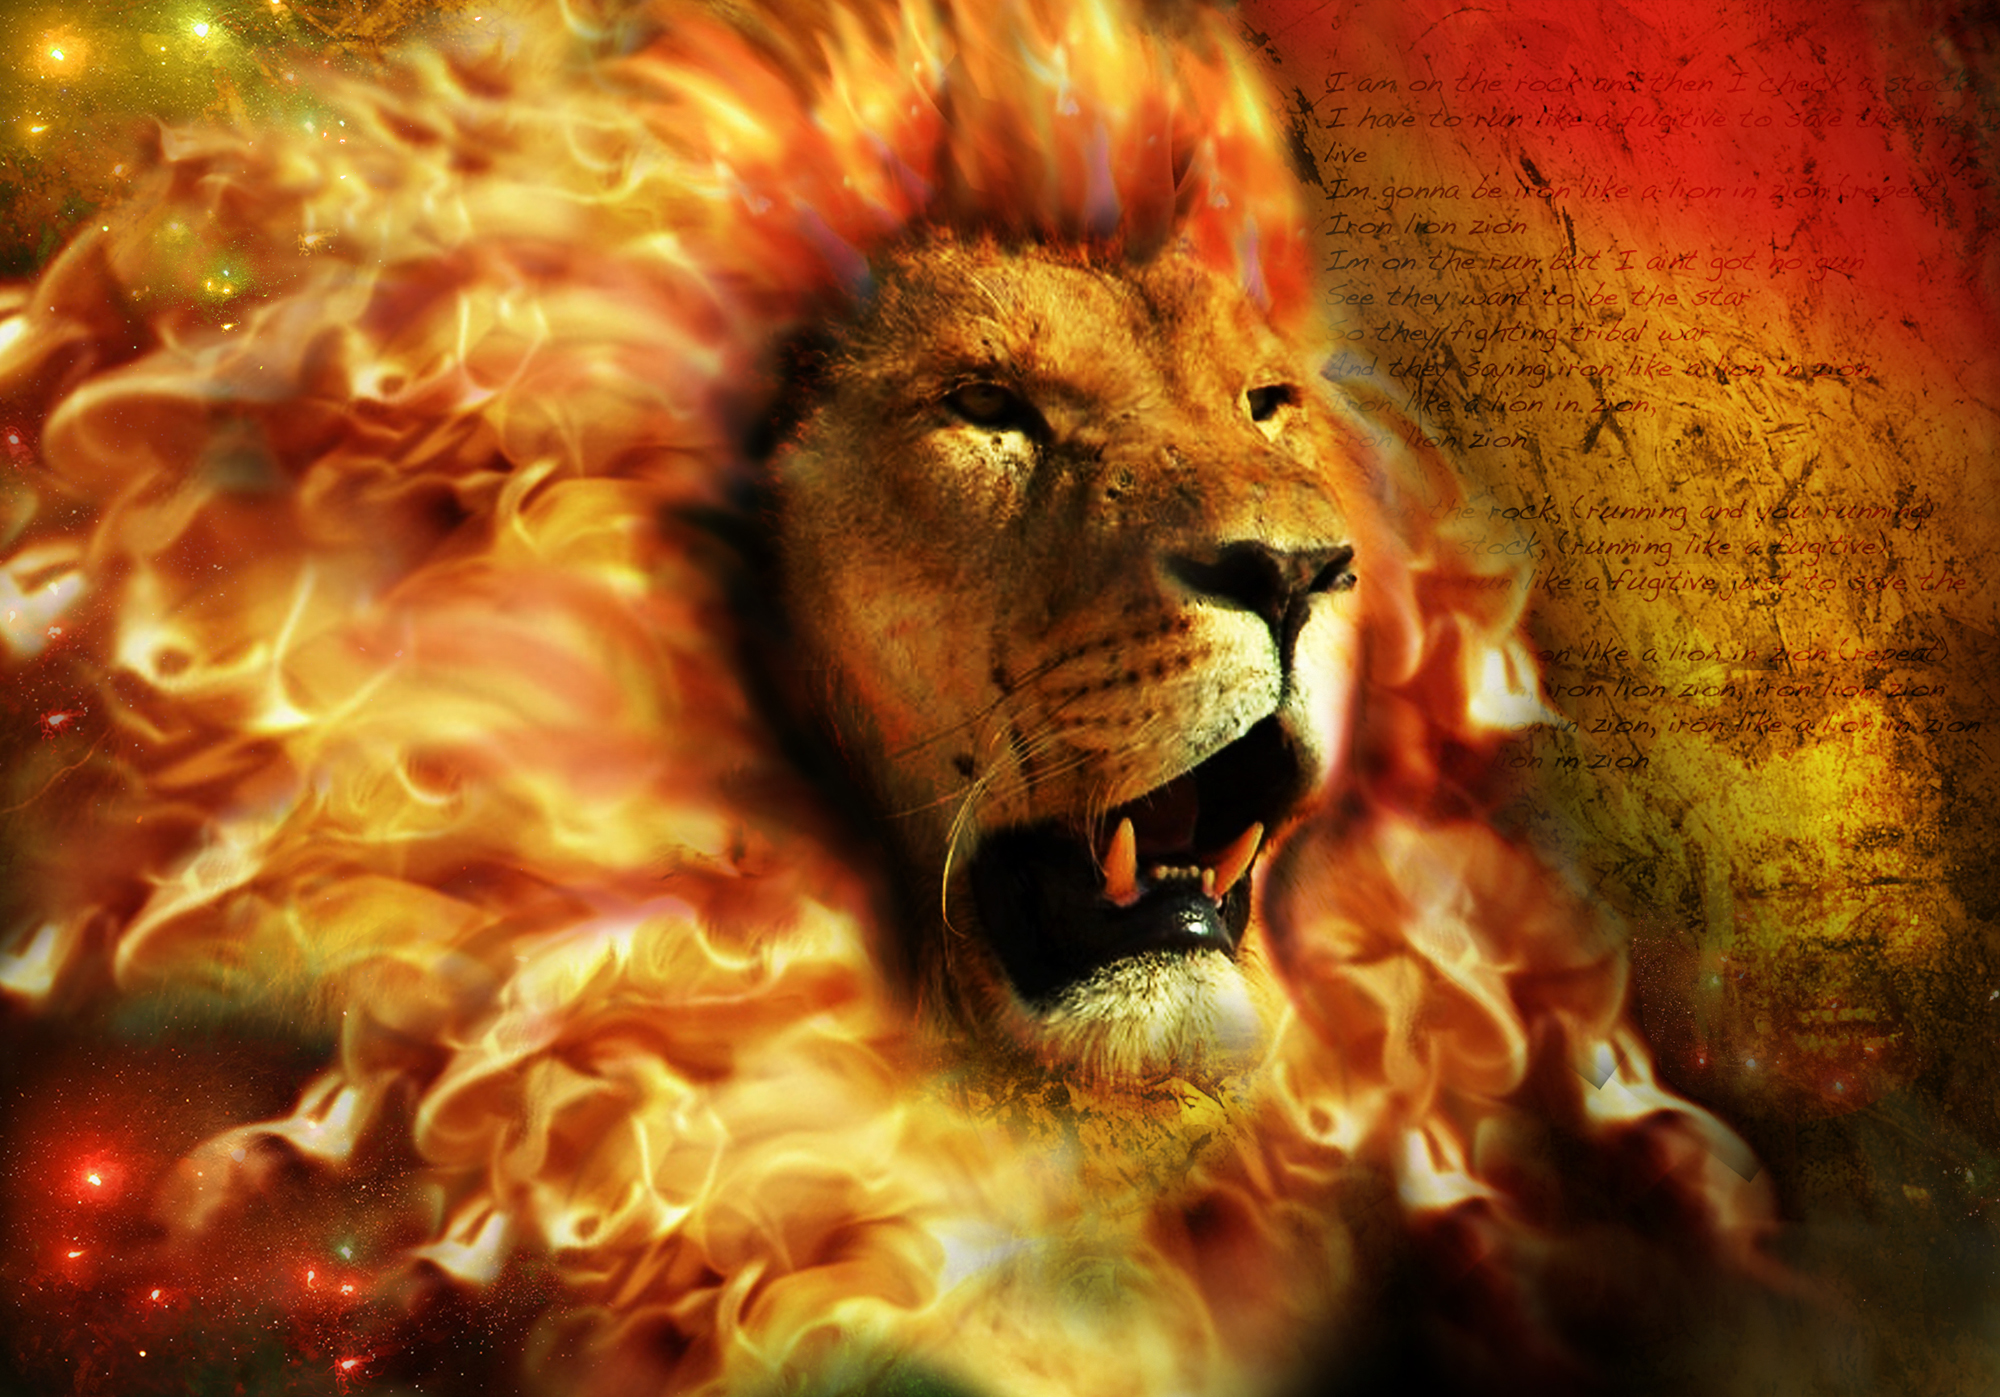 Mars U Lavu3 - Fierce Lion Of Judah , HD Wallpaper & Backgrounds